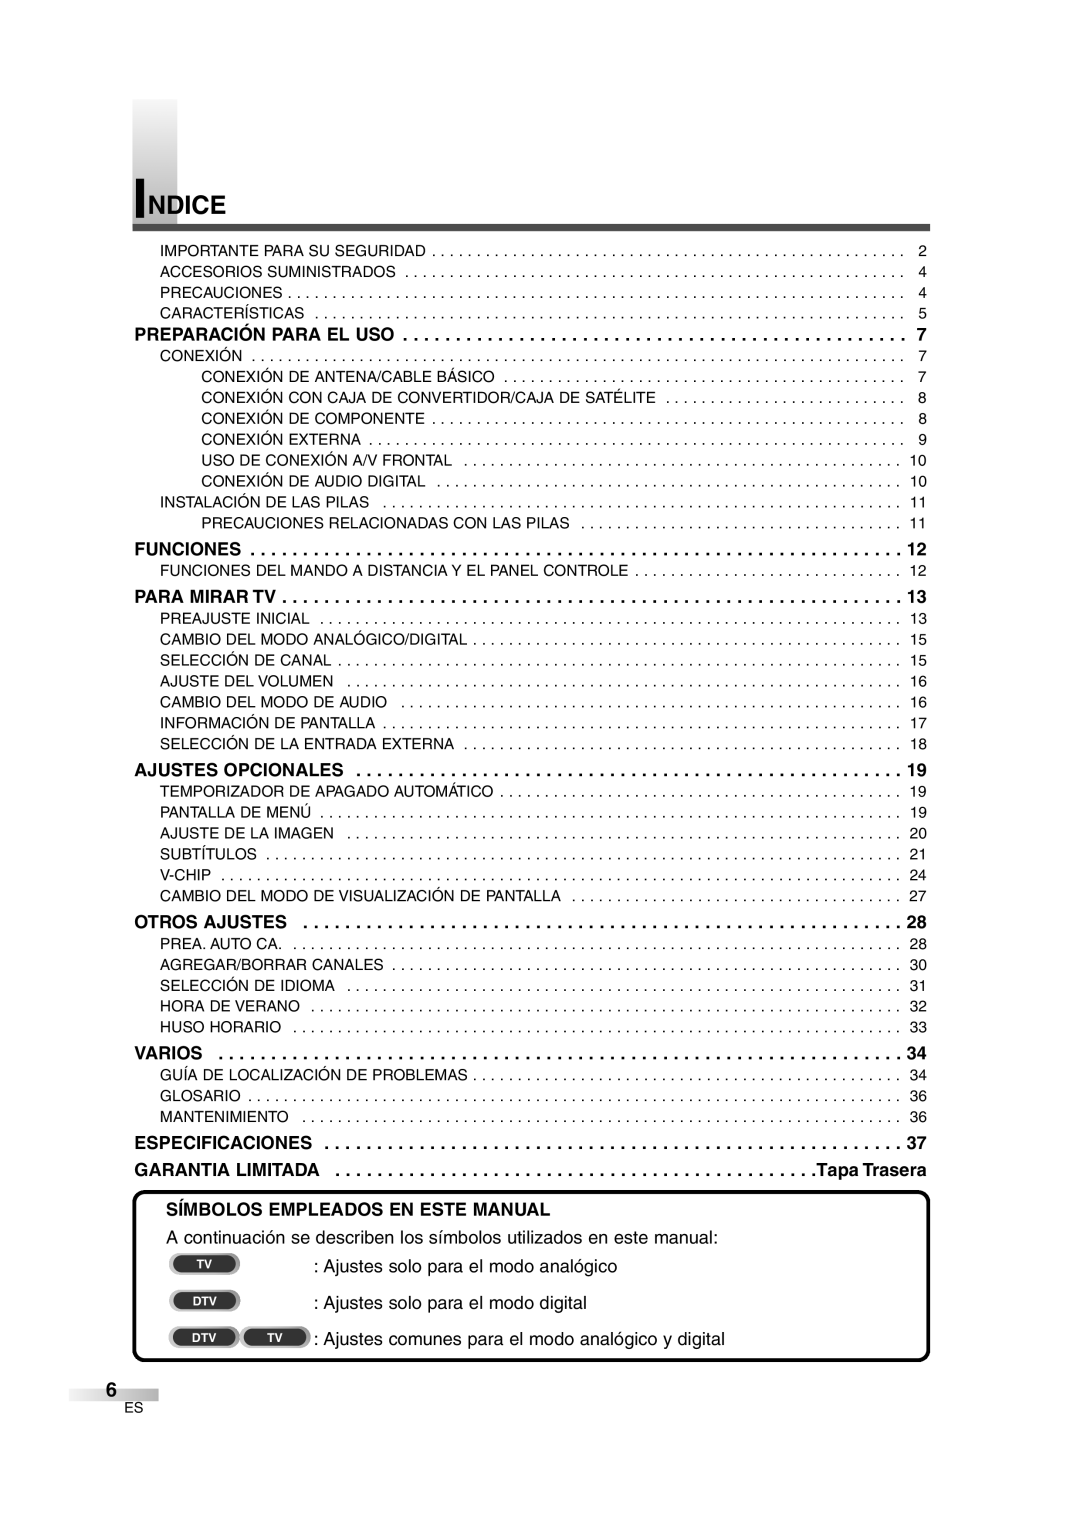 Sylvania SSGF4276 owner manual Indice, Especificaciones, Garantia Limitada, Símbolos Empleados En Este Manual, Tapa Trasera 